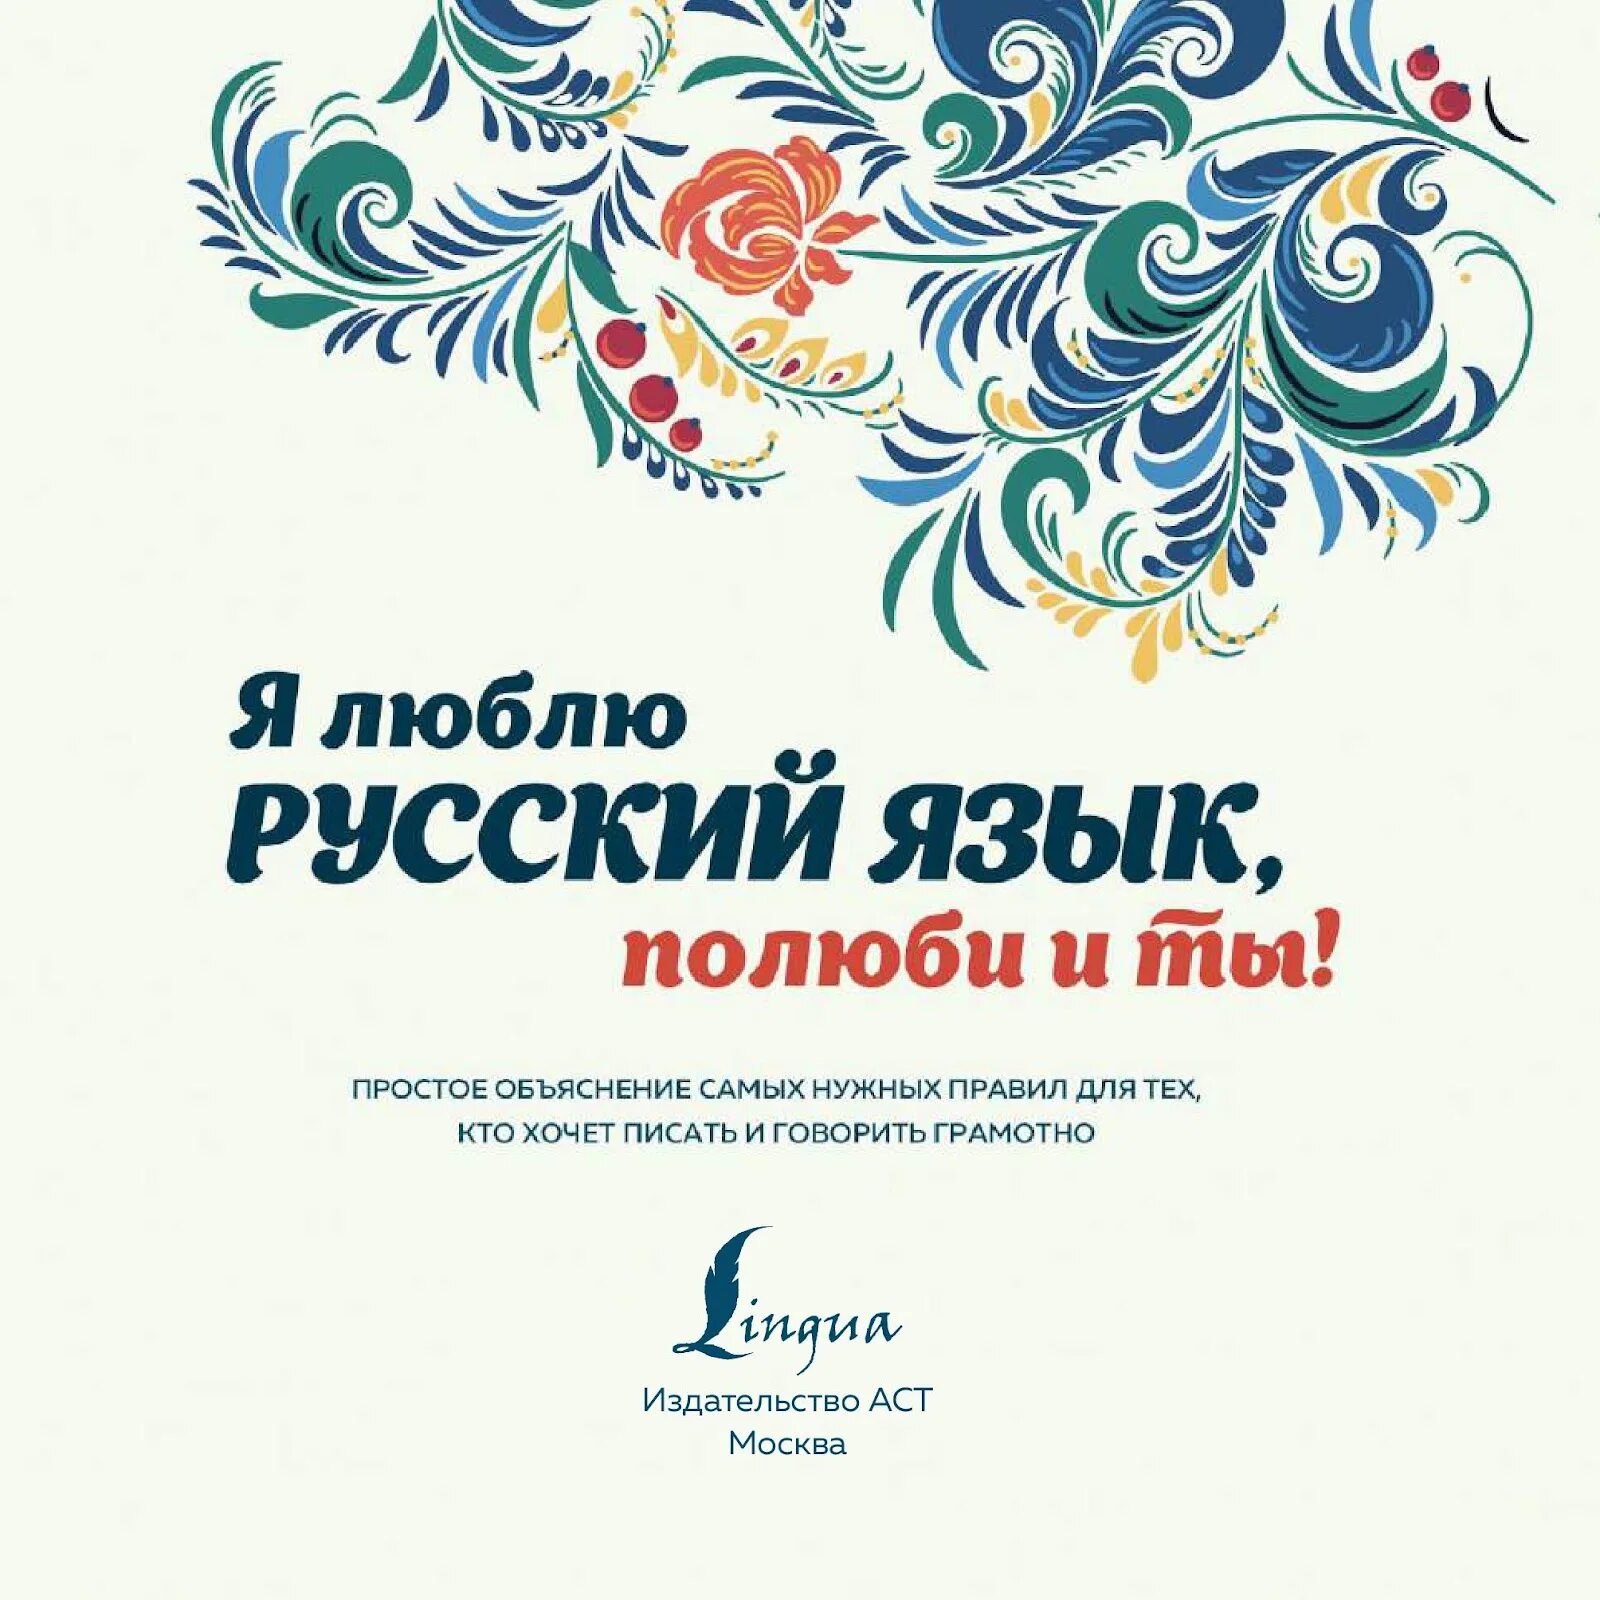 Я люблю русский язык!. Я люблю русский язык Полюби и ты. Я люблю русский язык книга. Я люблю русский язык картинки. Обожаю русский язык